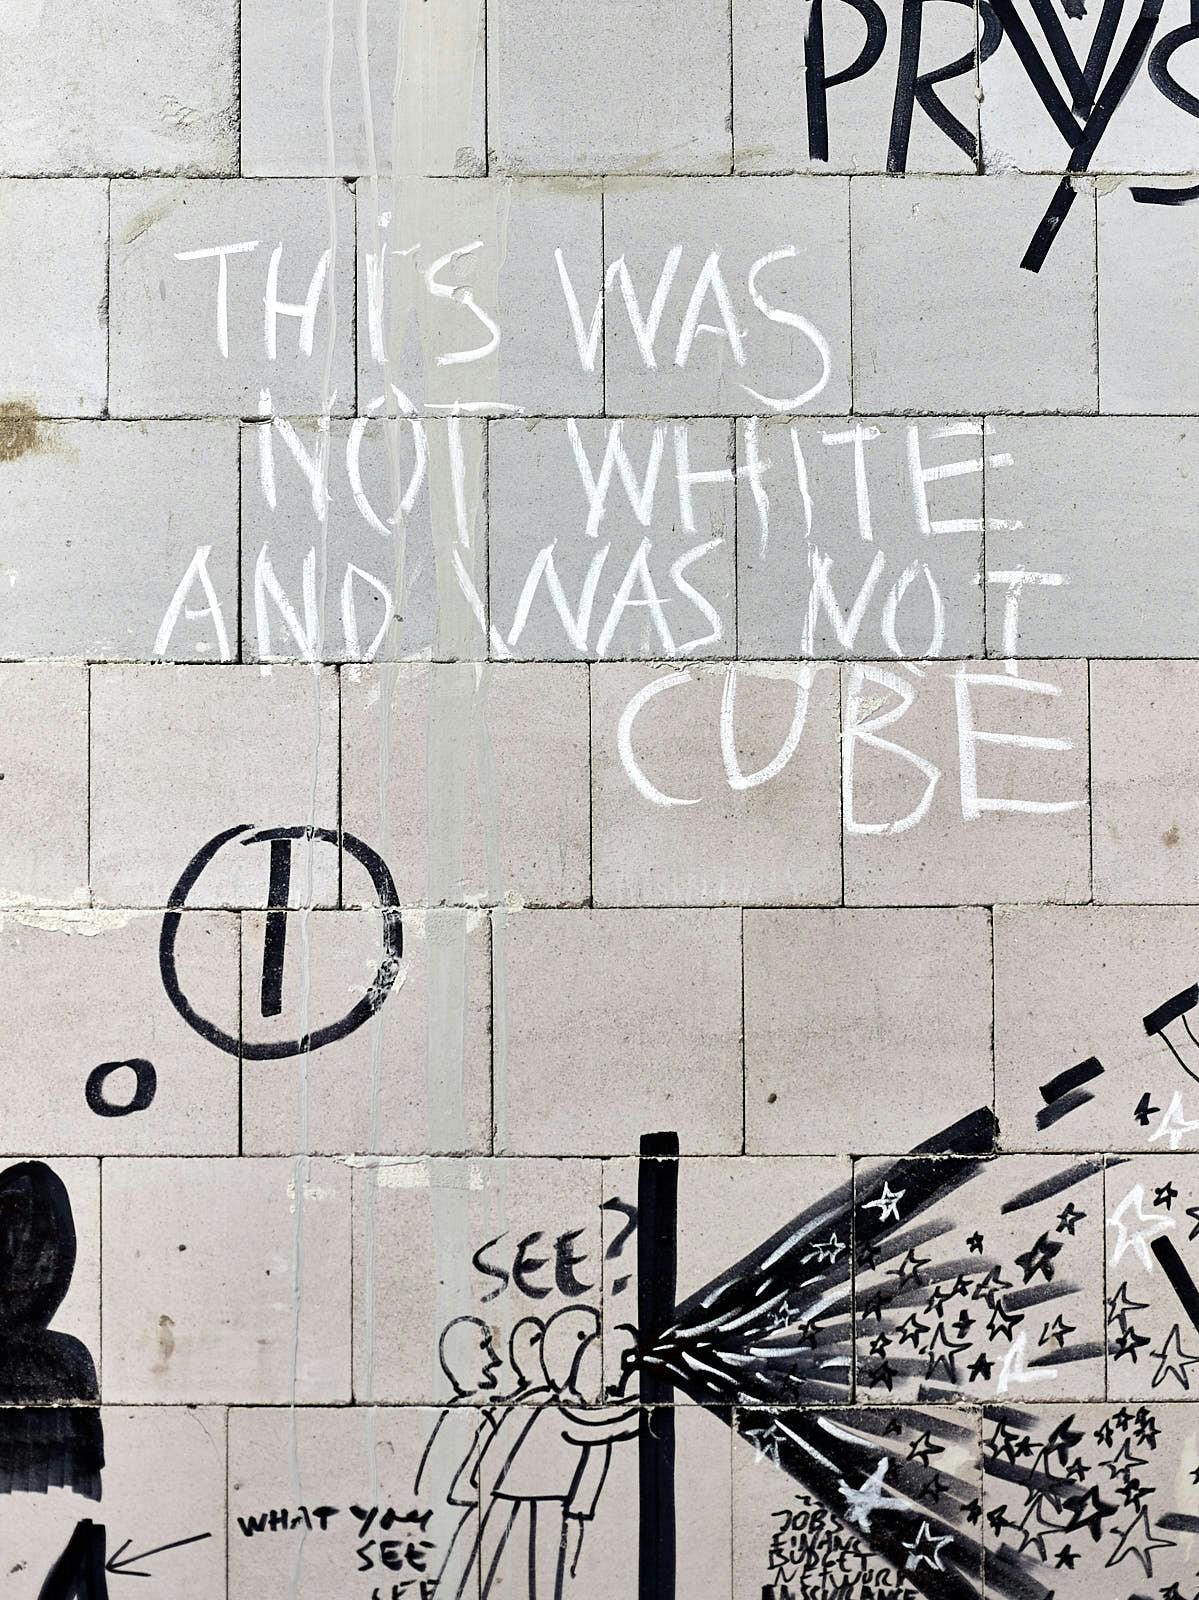 Foto: Mit Kreide ist auf eine rohe Betonwand geschrieben, this was not white and was not cube.